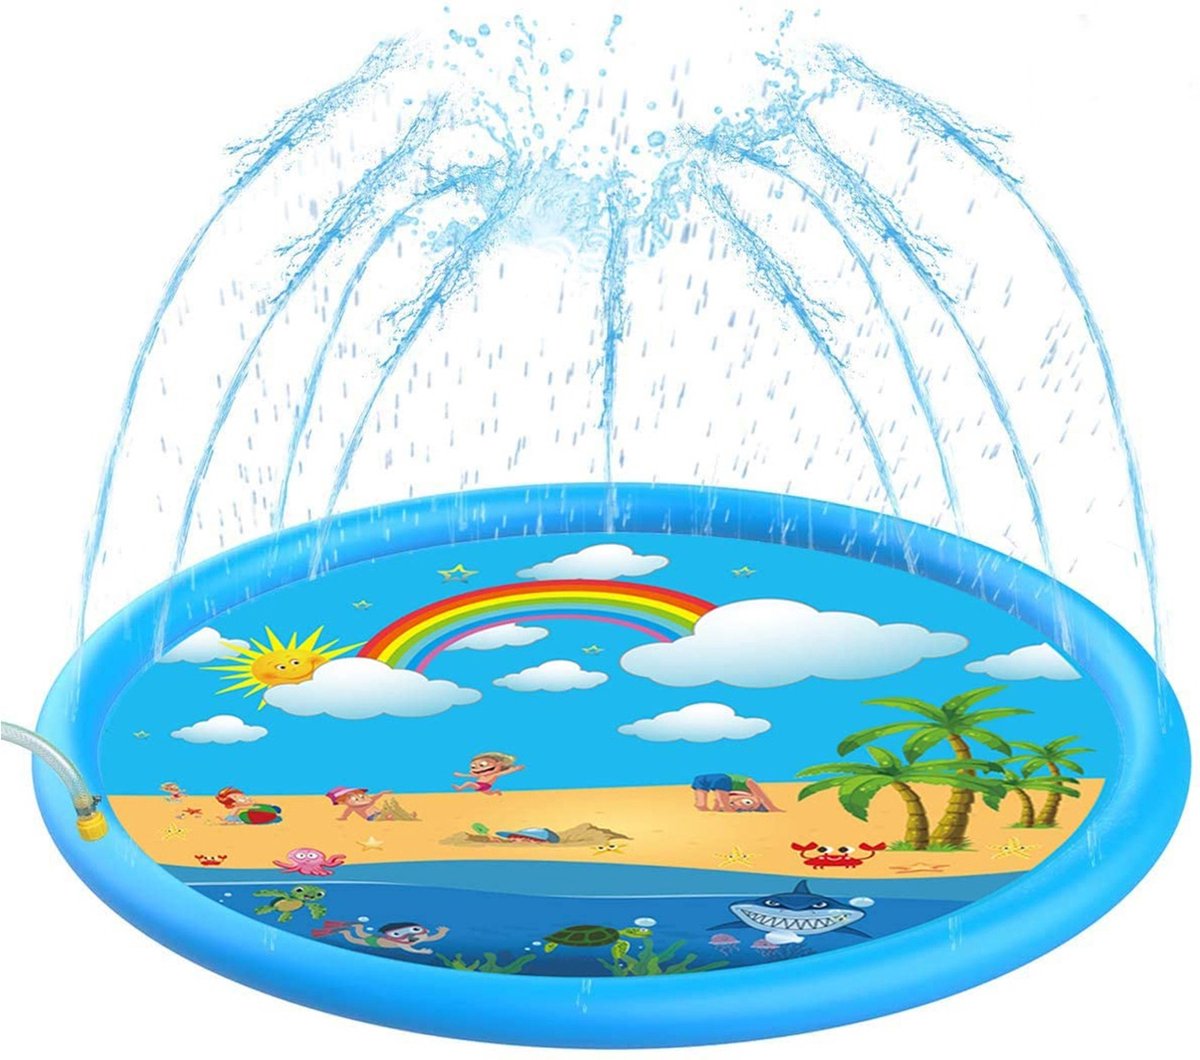 Xd Xtreme - Water Fontein Speelmat voor Kinderen - waterspeelgoed - 170CM - met sproeiers - Eiland thema - Verkoeling voor kids - Xd  Xtreme